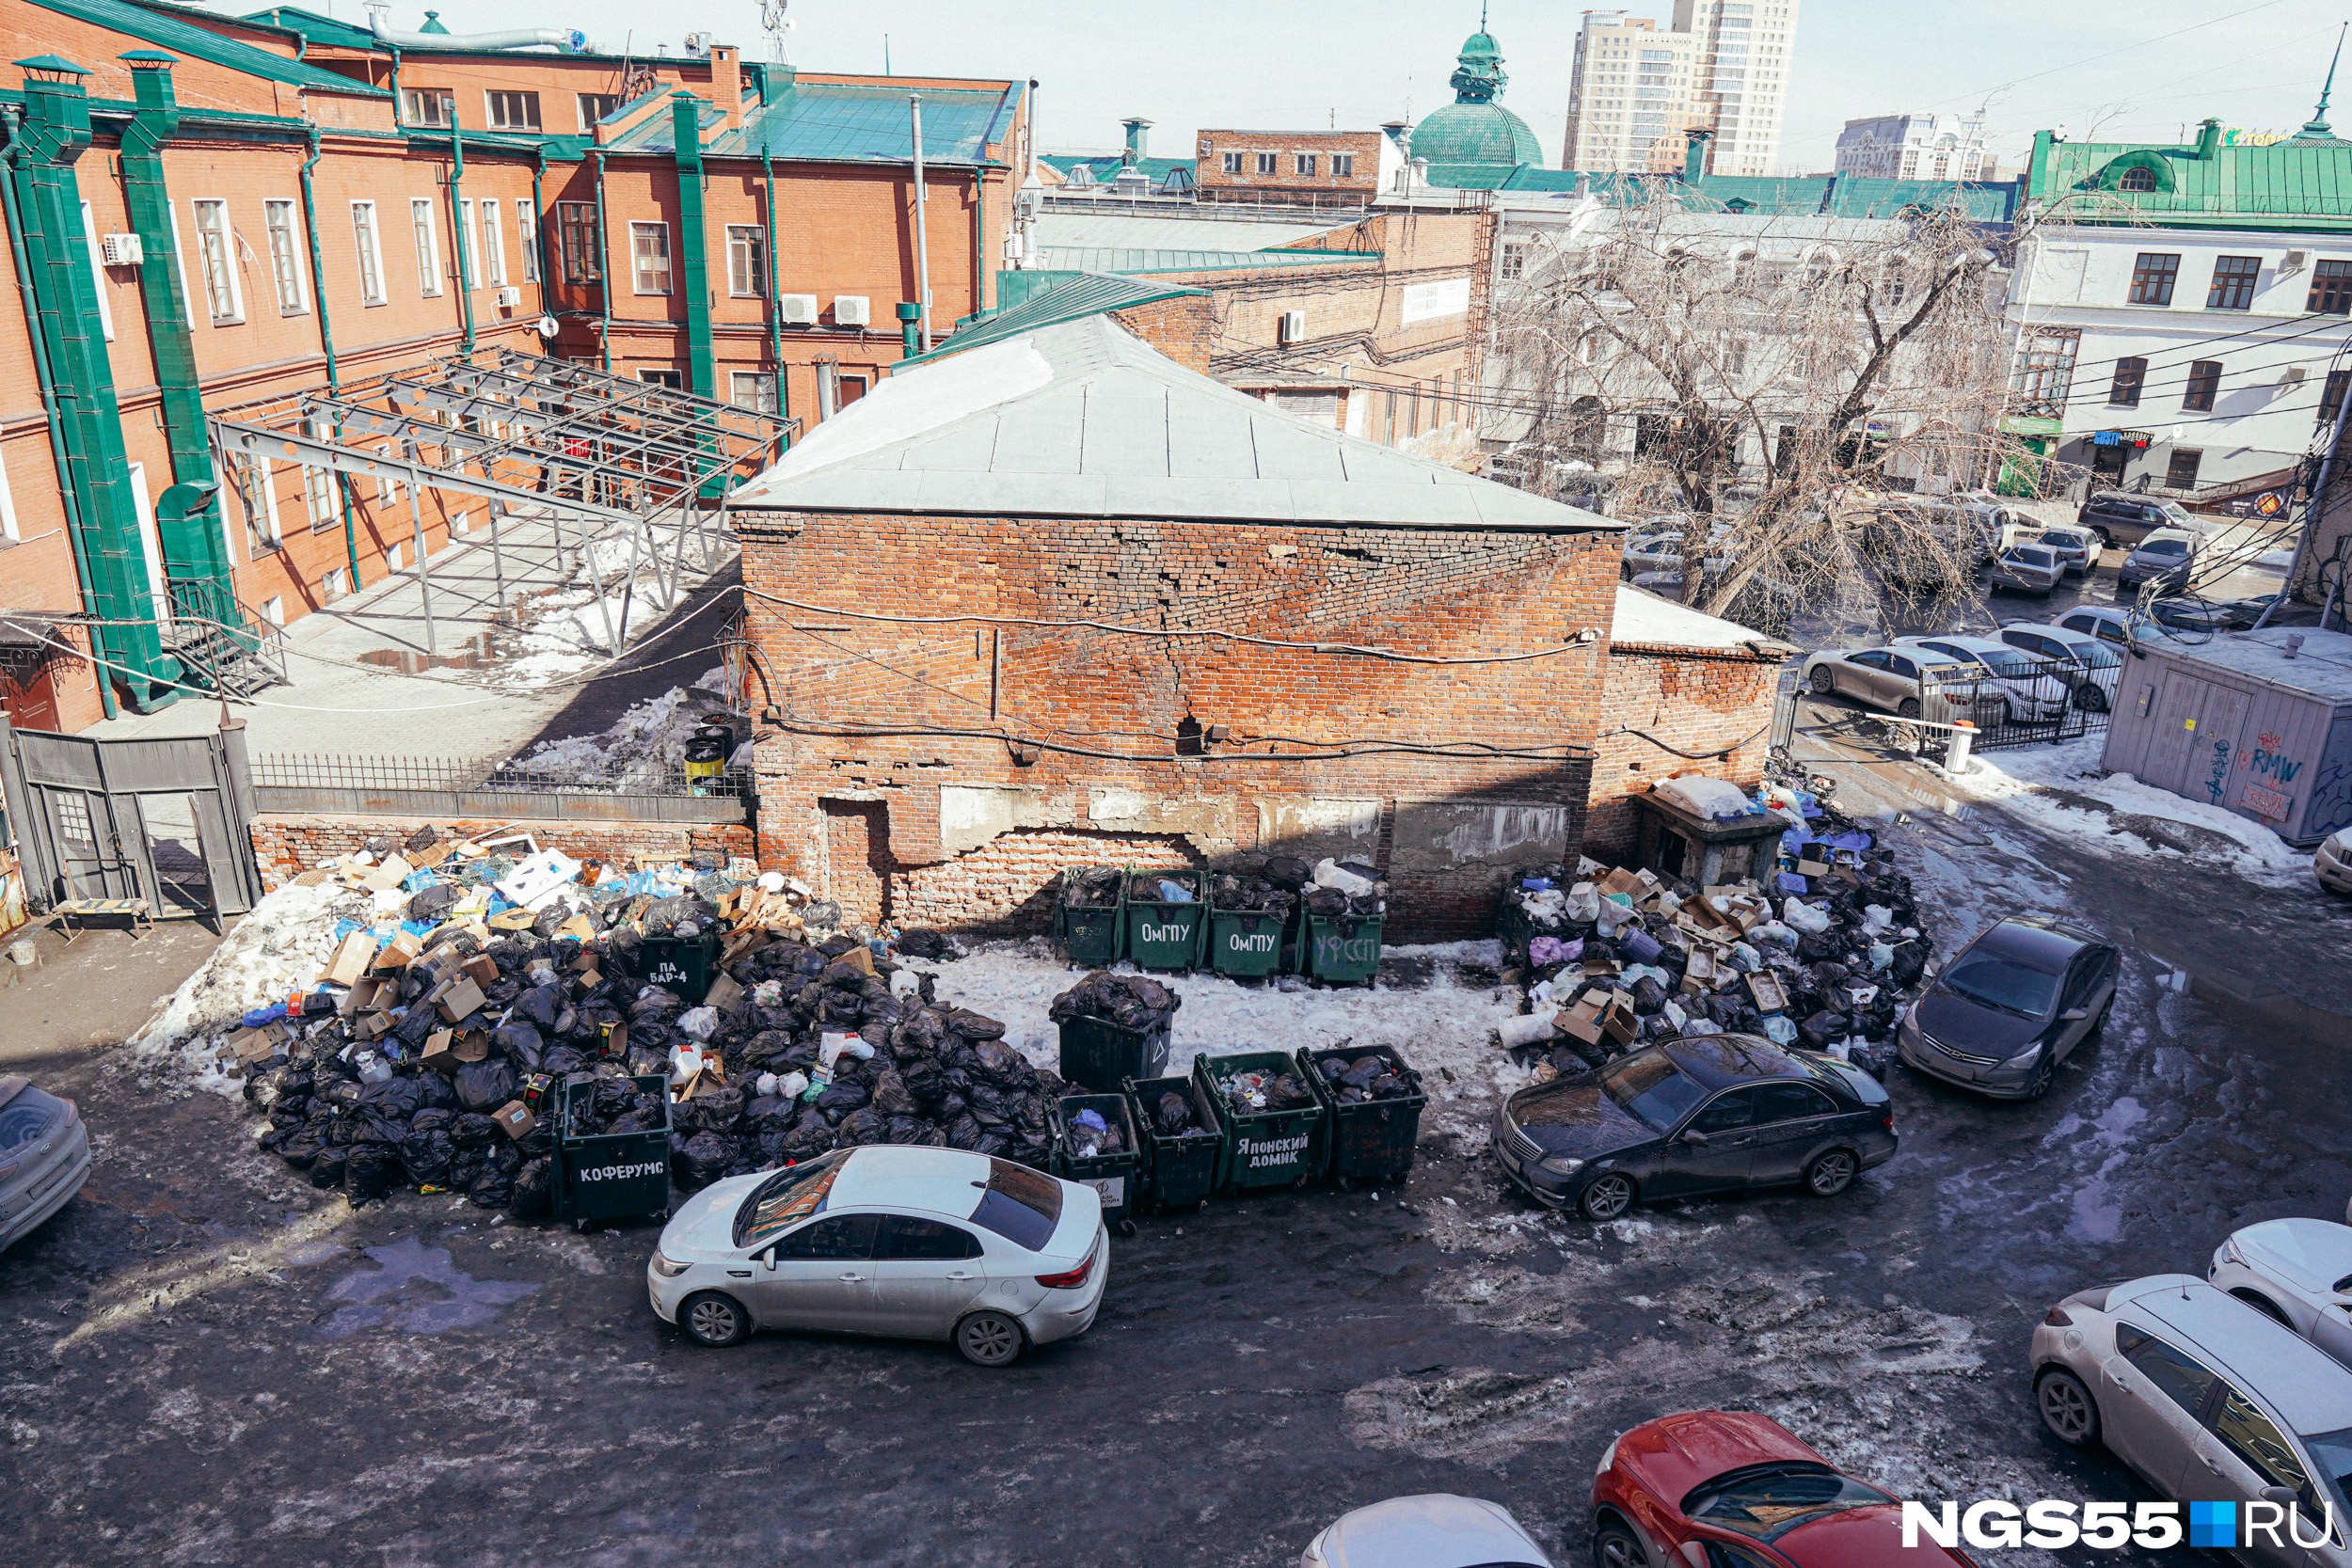 Царь-помойка: фоторепортаж с огромной свалки, которая образовалась в самом центре Омска